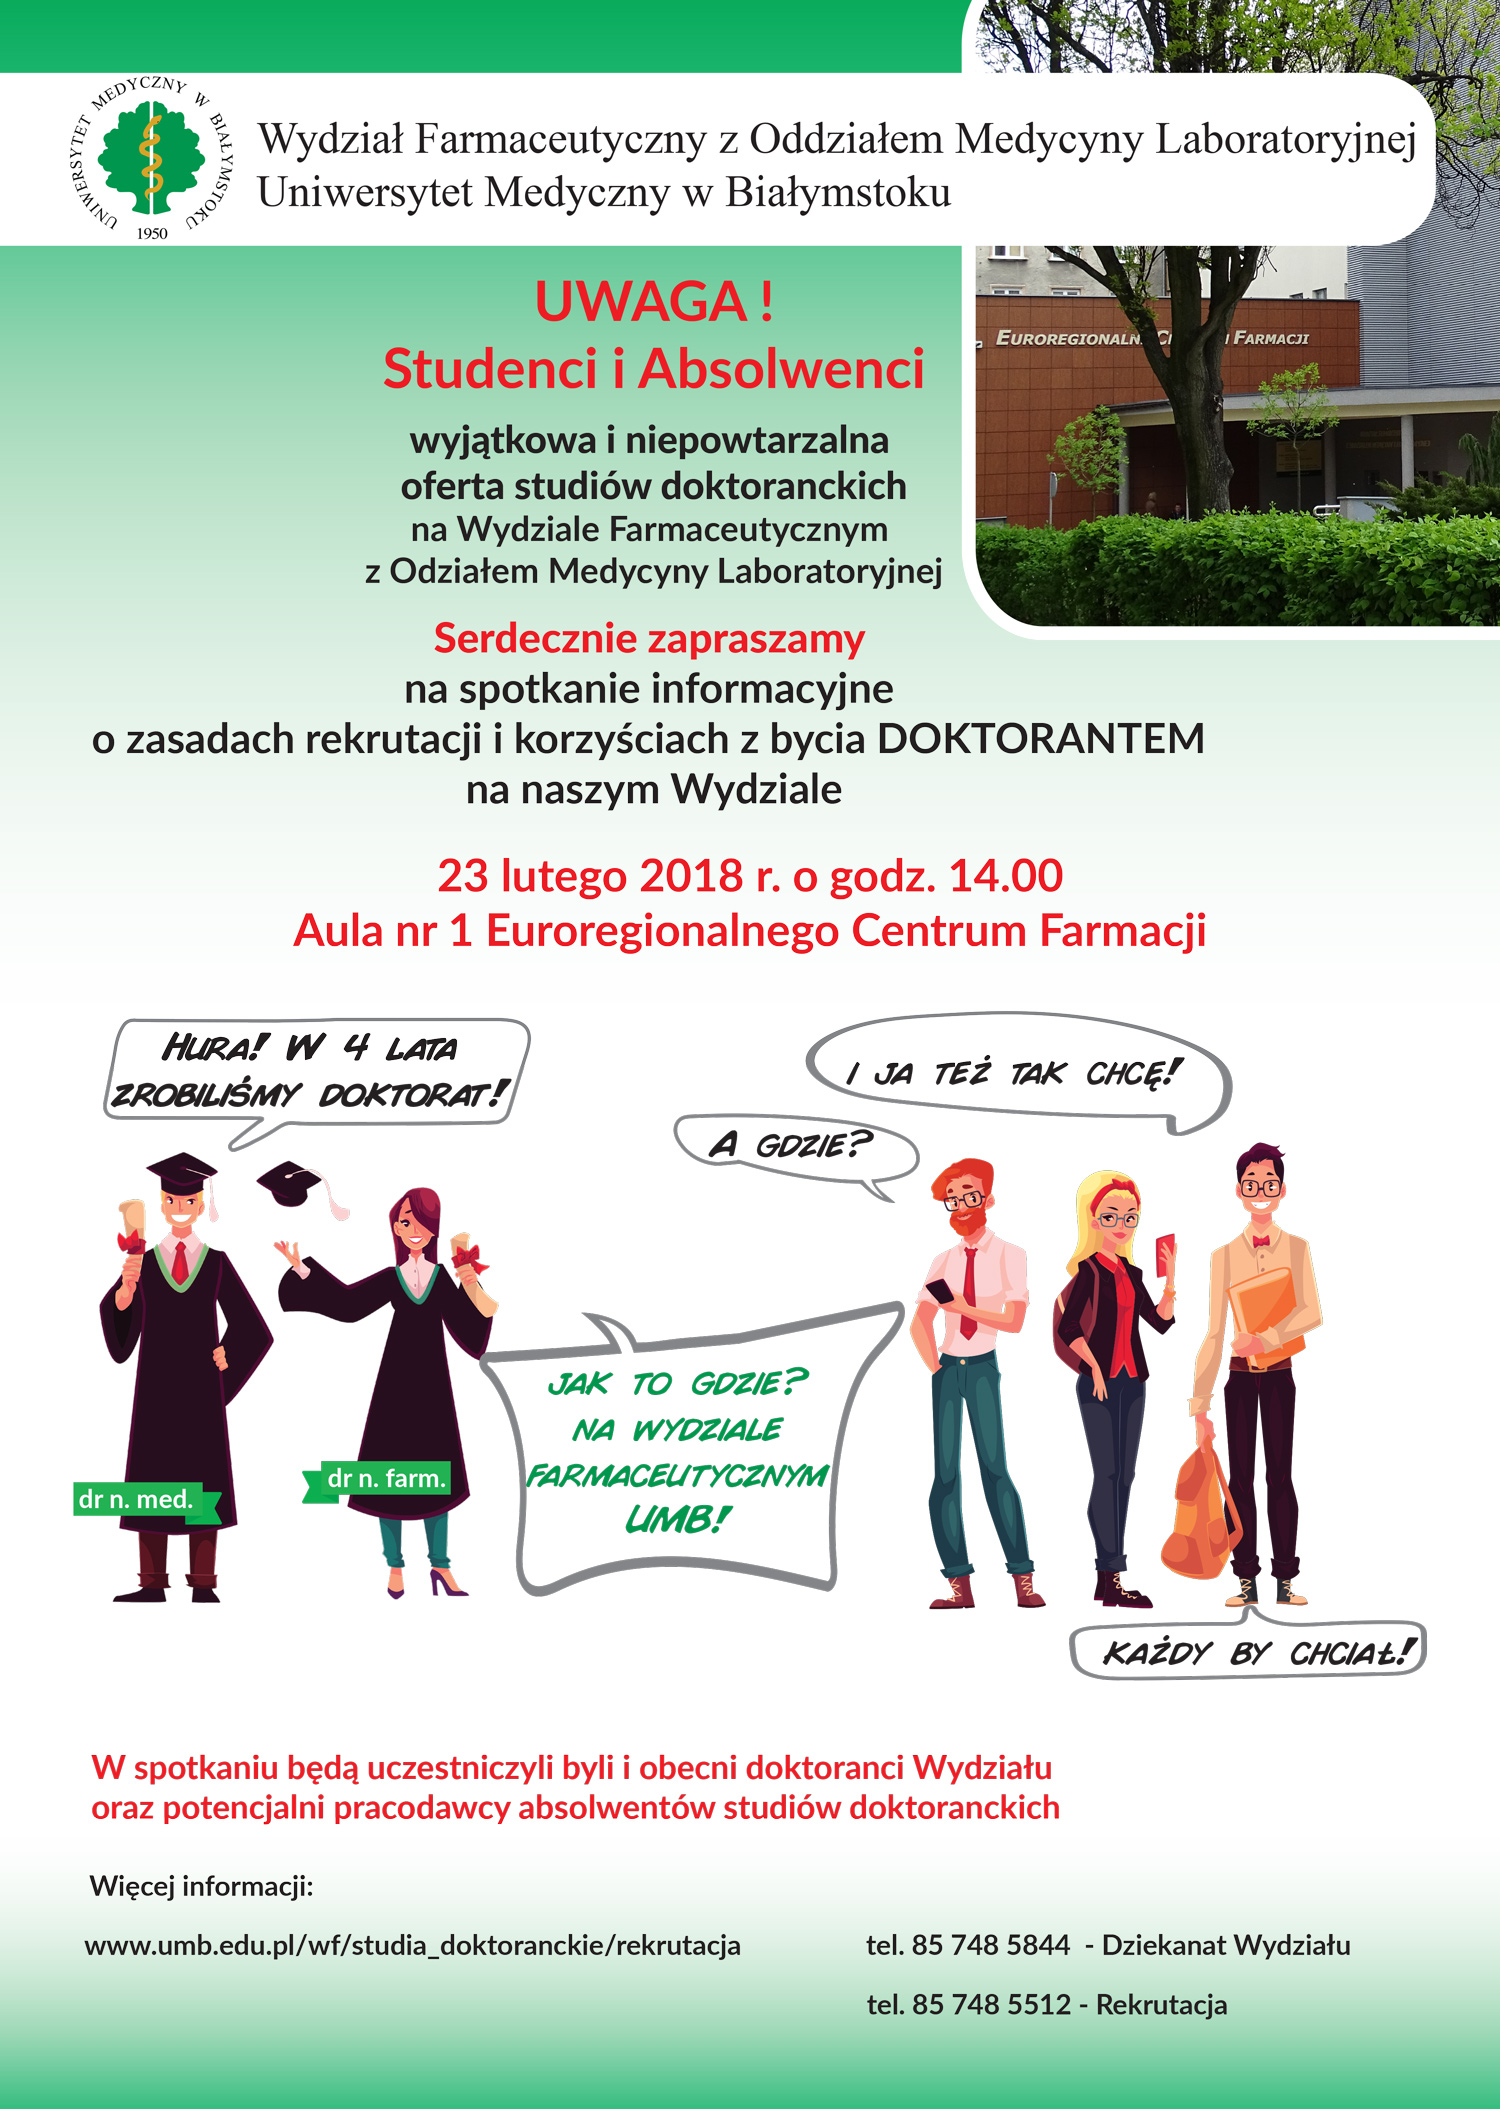 Plakat promujący studia doktoranckie